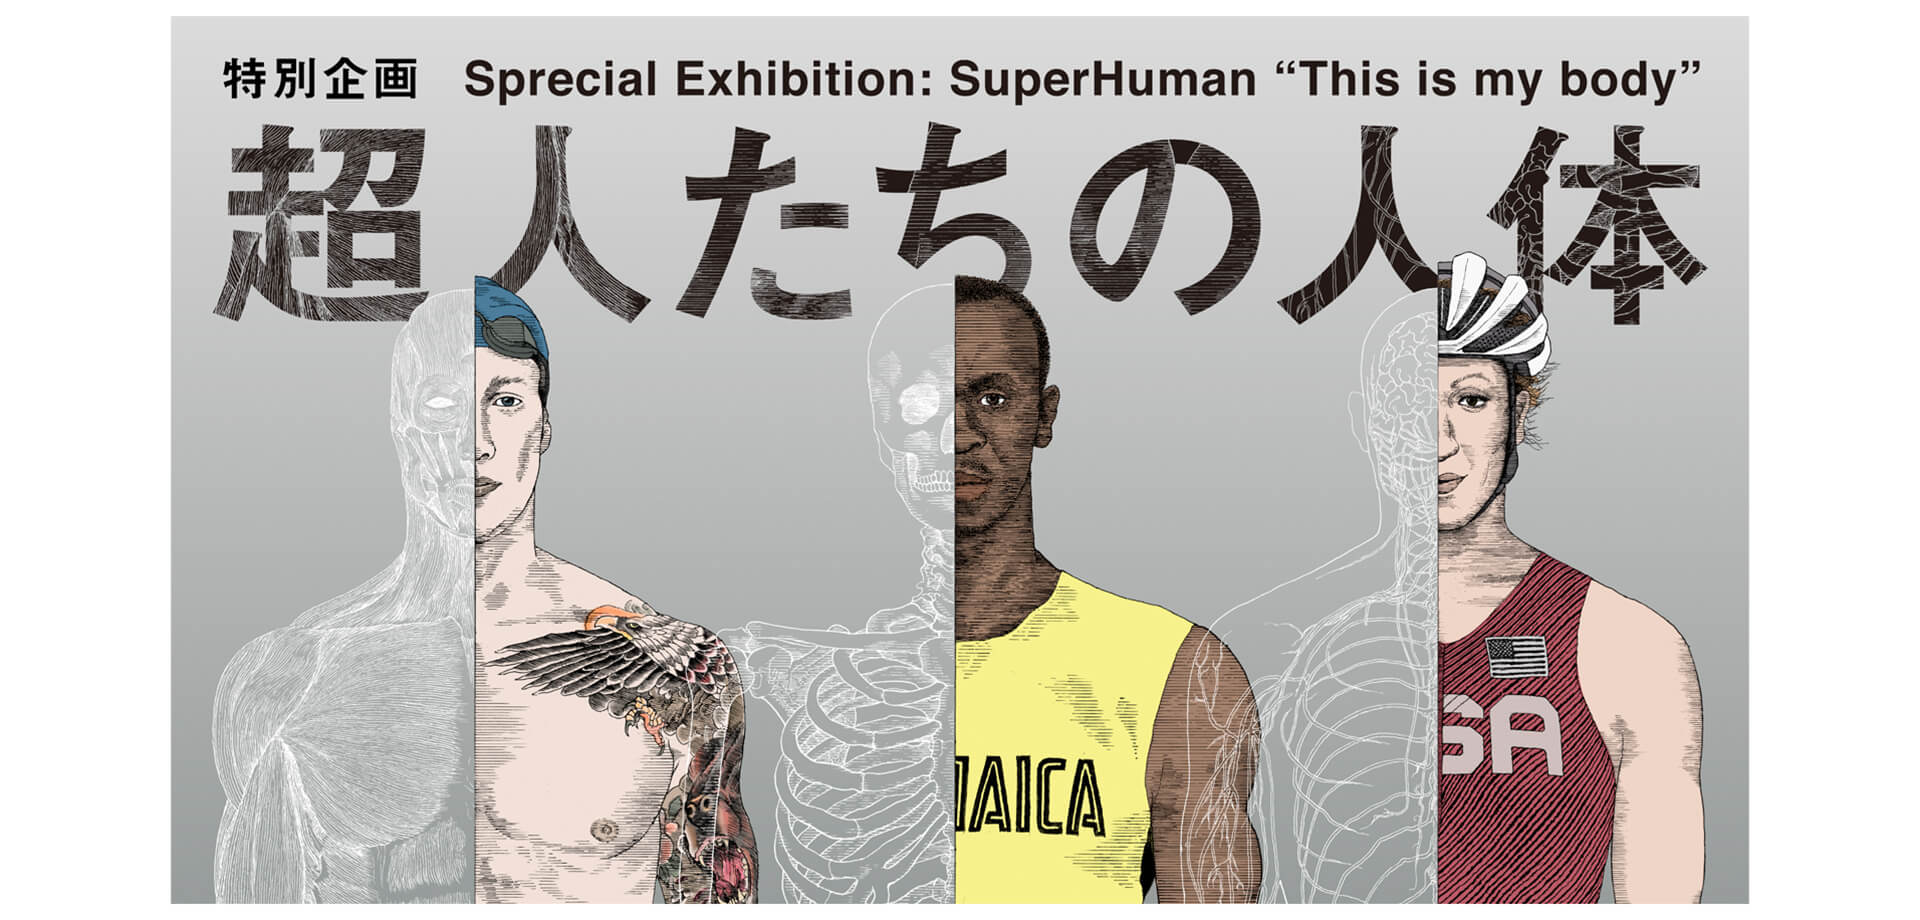 日本科学未来館「超人たちの人体」